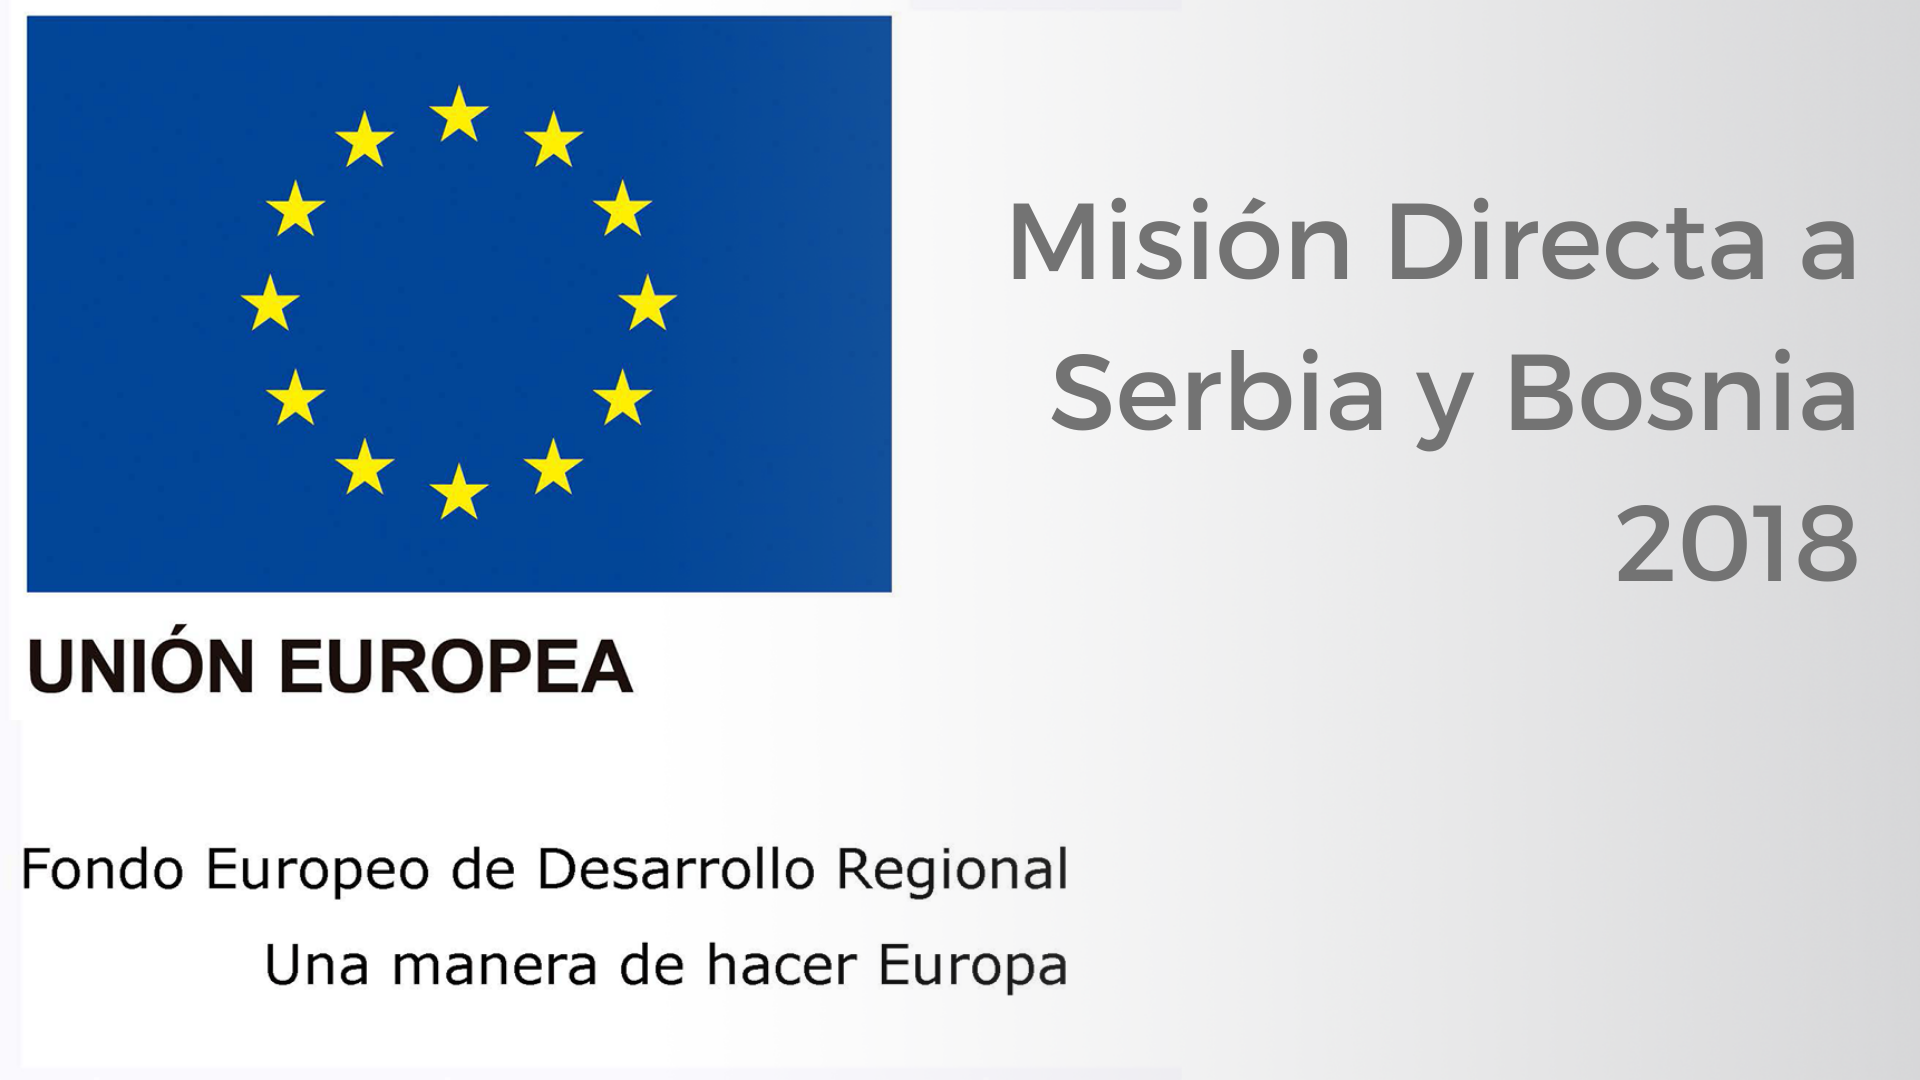 mision directa serbia y bosnia 2018